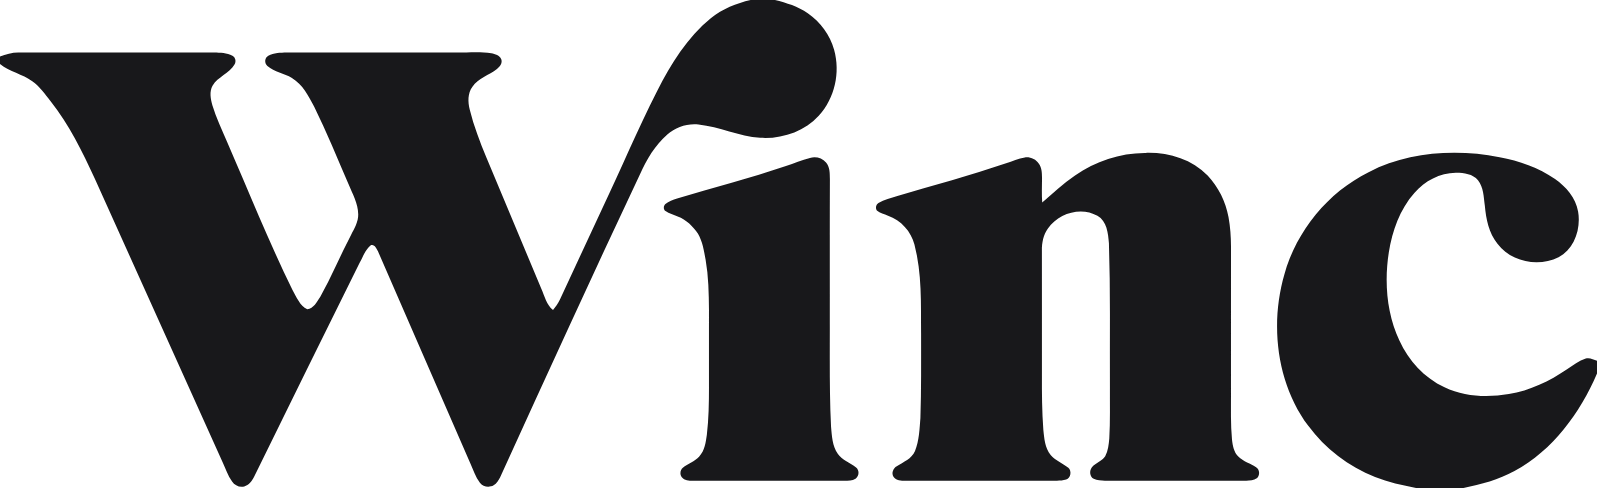 Winc logo large (transparent PNG)